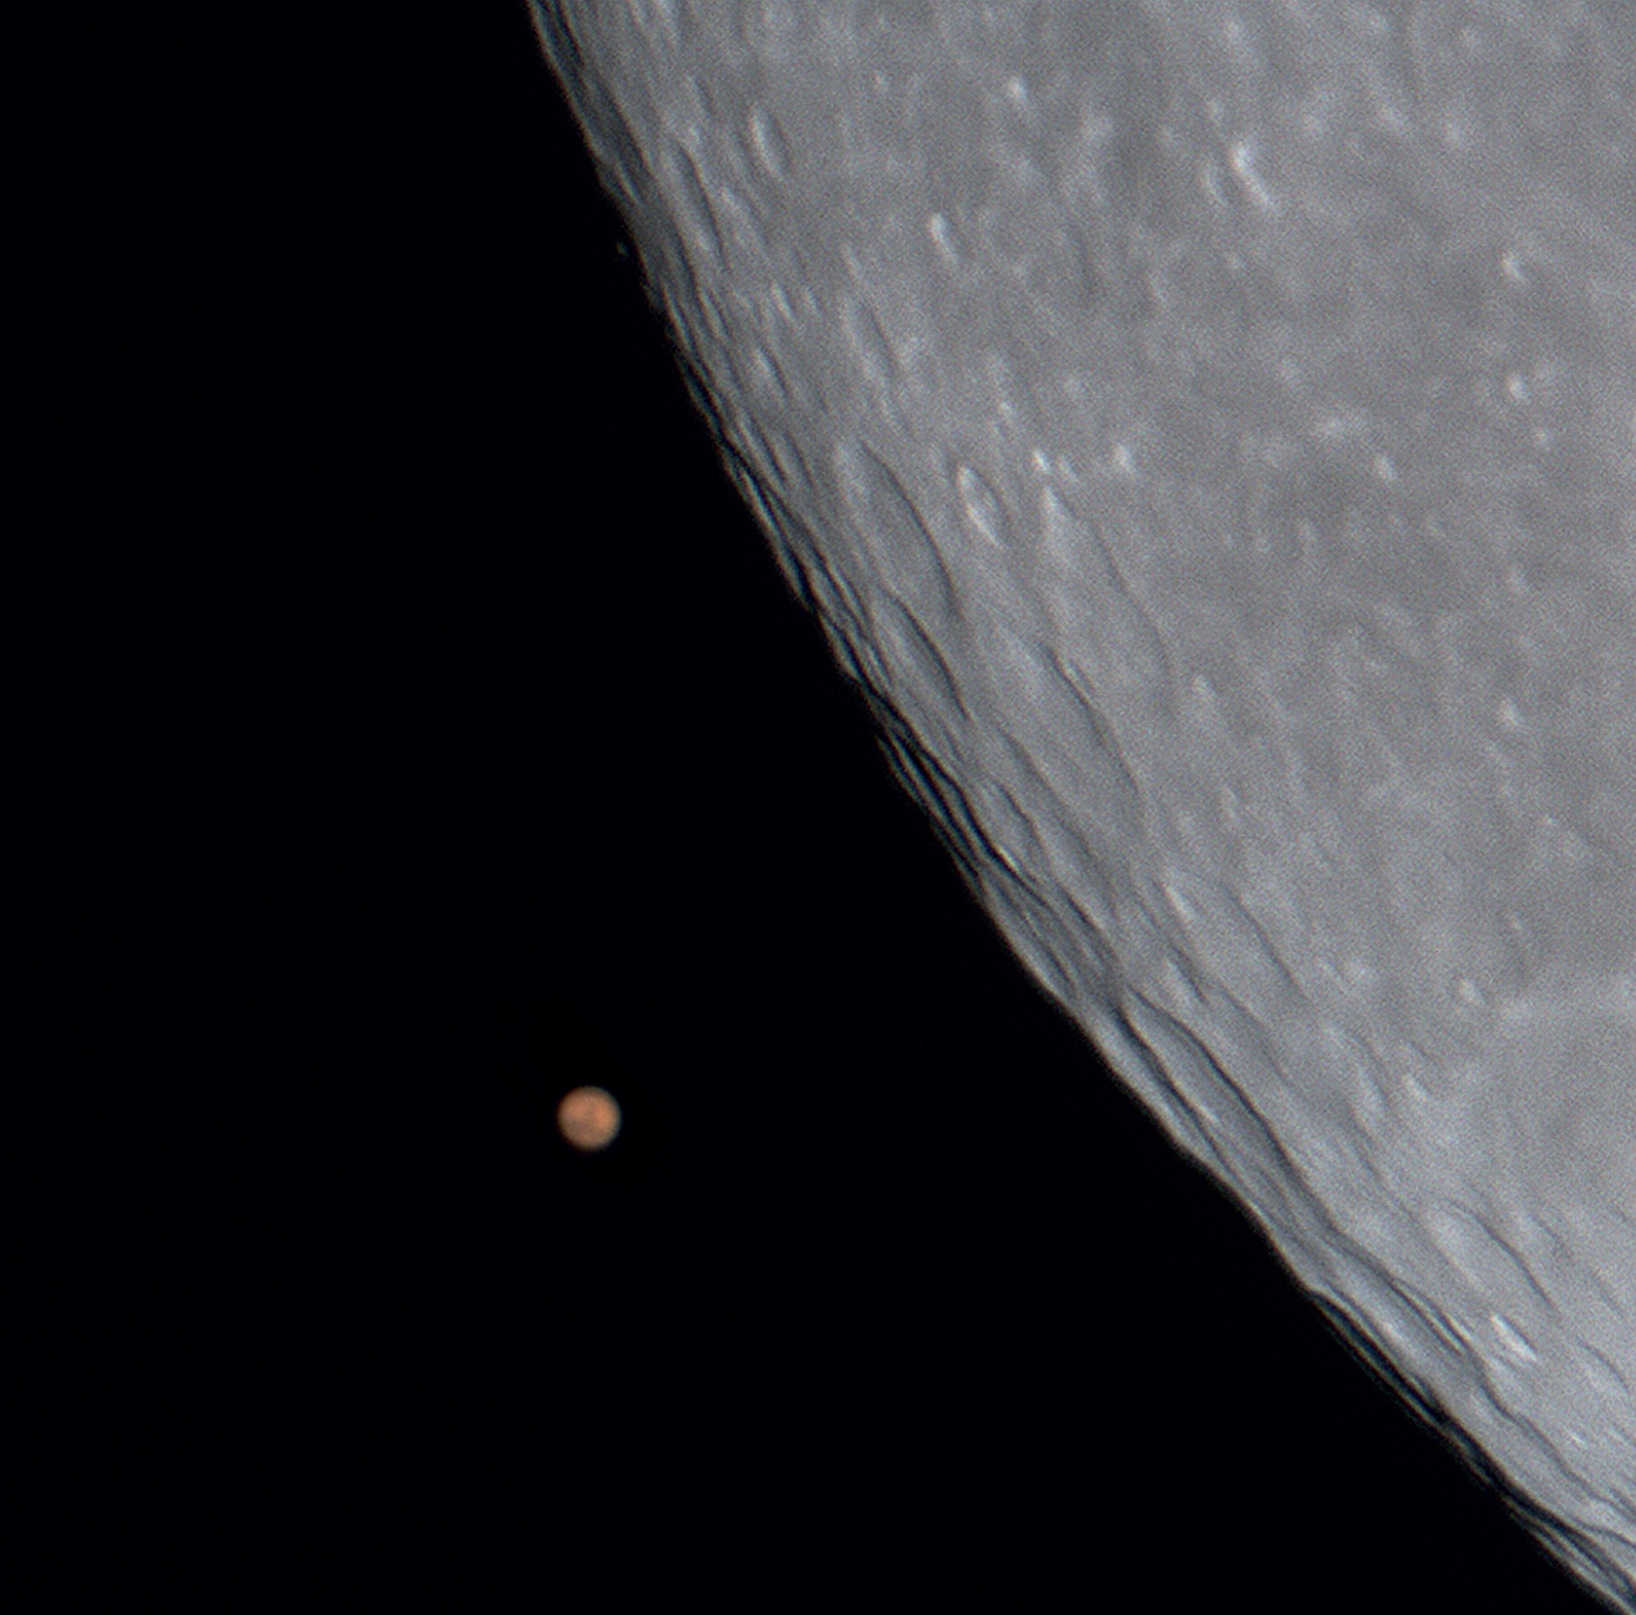 Ocultare aproape perfectă a planetei Marte de către Lună la data de 24 decembrie 2007. Imagine realizată cu o cameră CCD fără răcire pe un SCT cu apertură de 200 mm și distanță focală de 2000 mm. U. Dittler